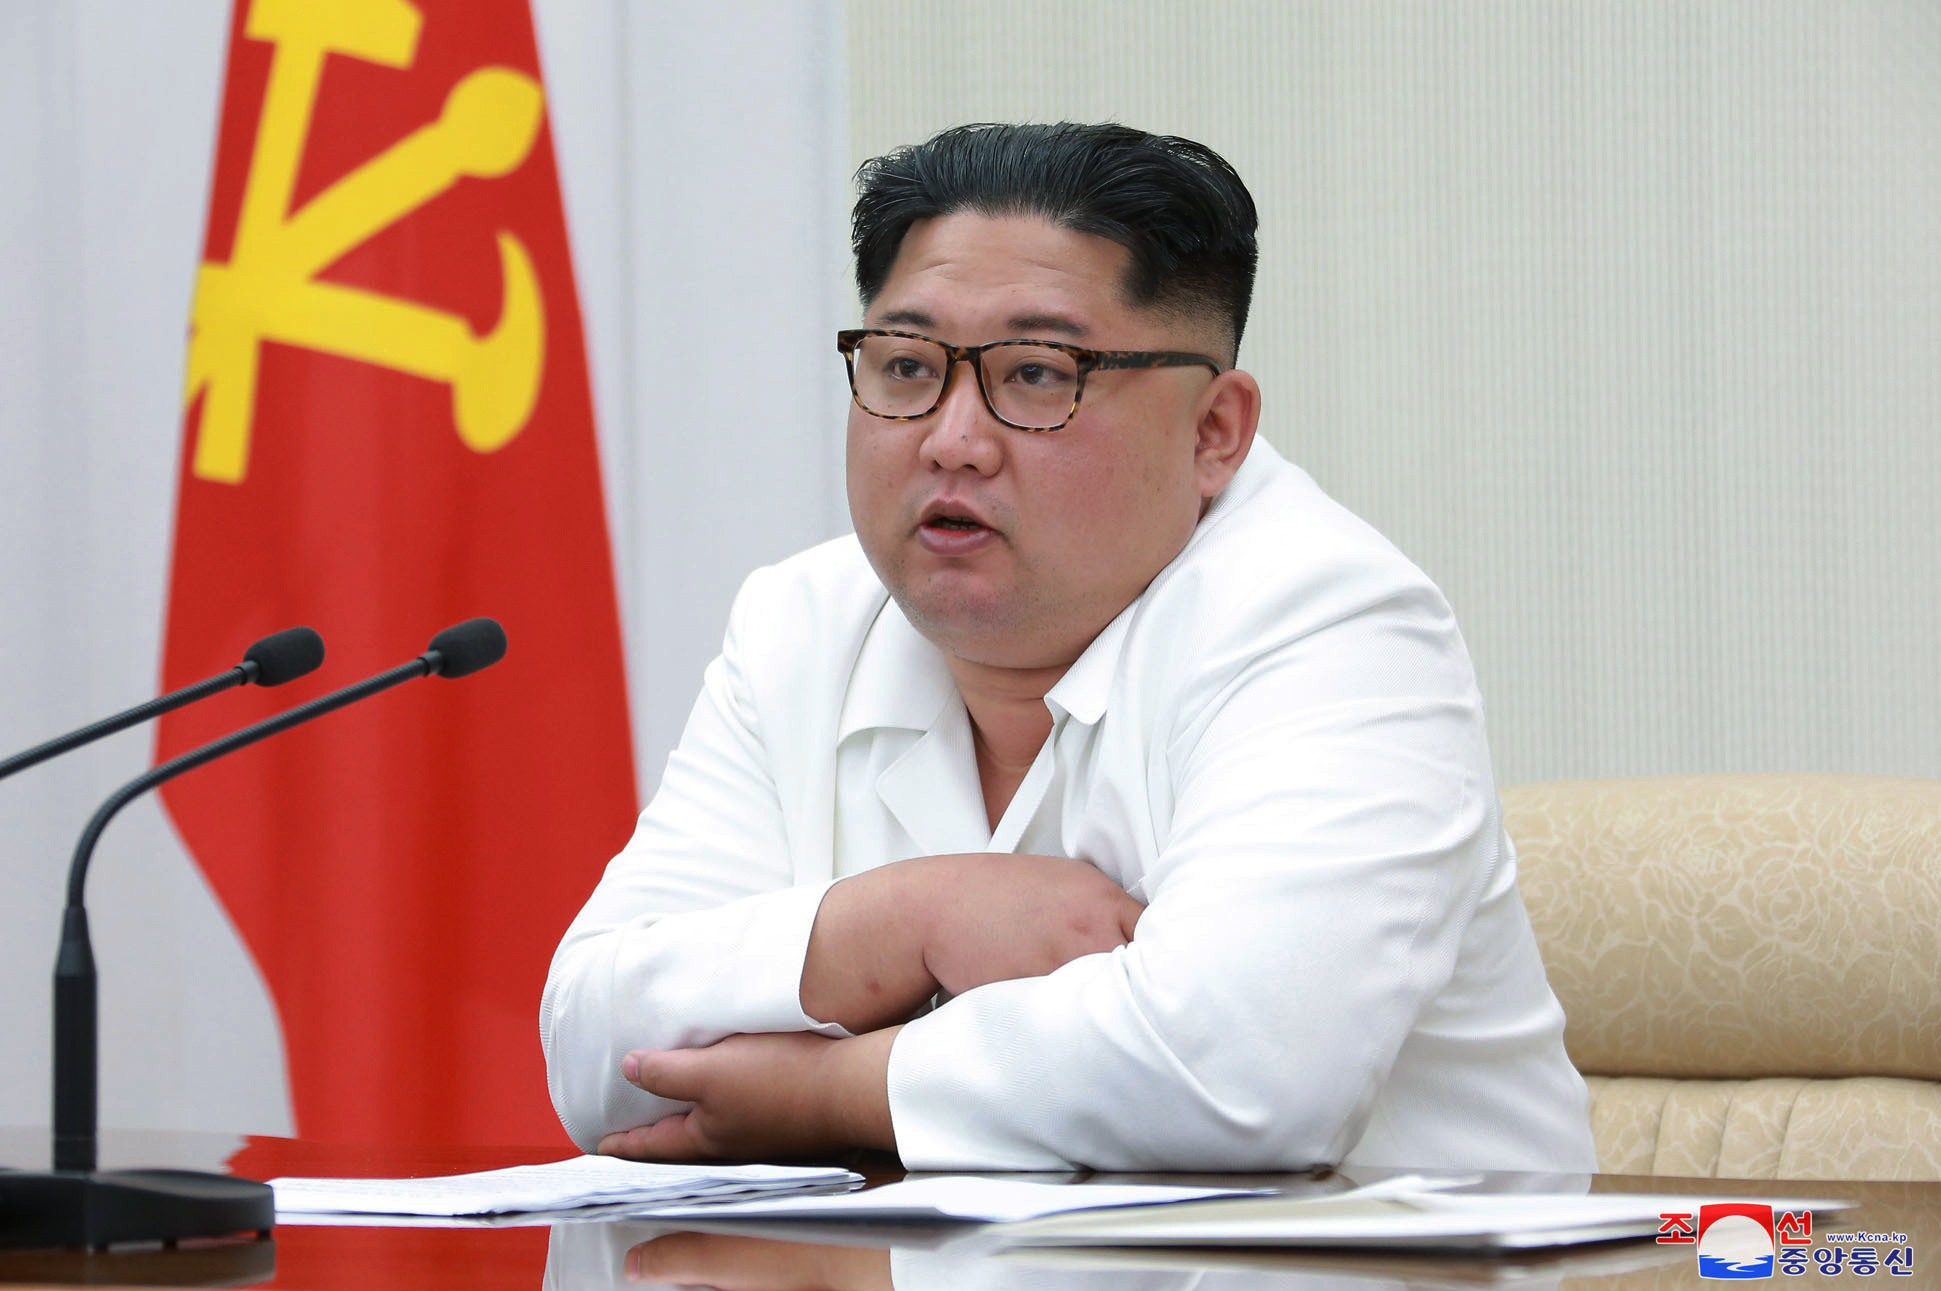 Carta Kim Jong-un a Trump expresa interés en cumbre: WSJ